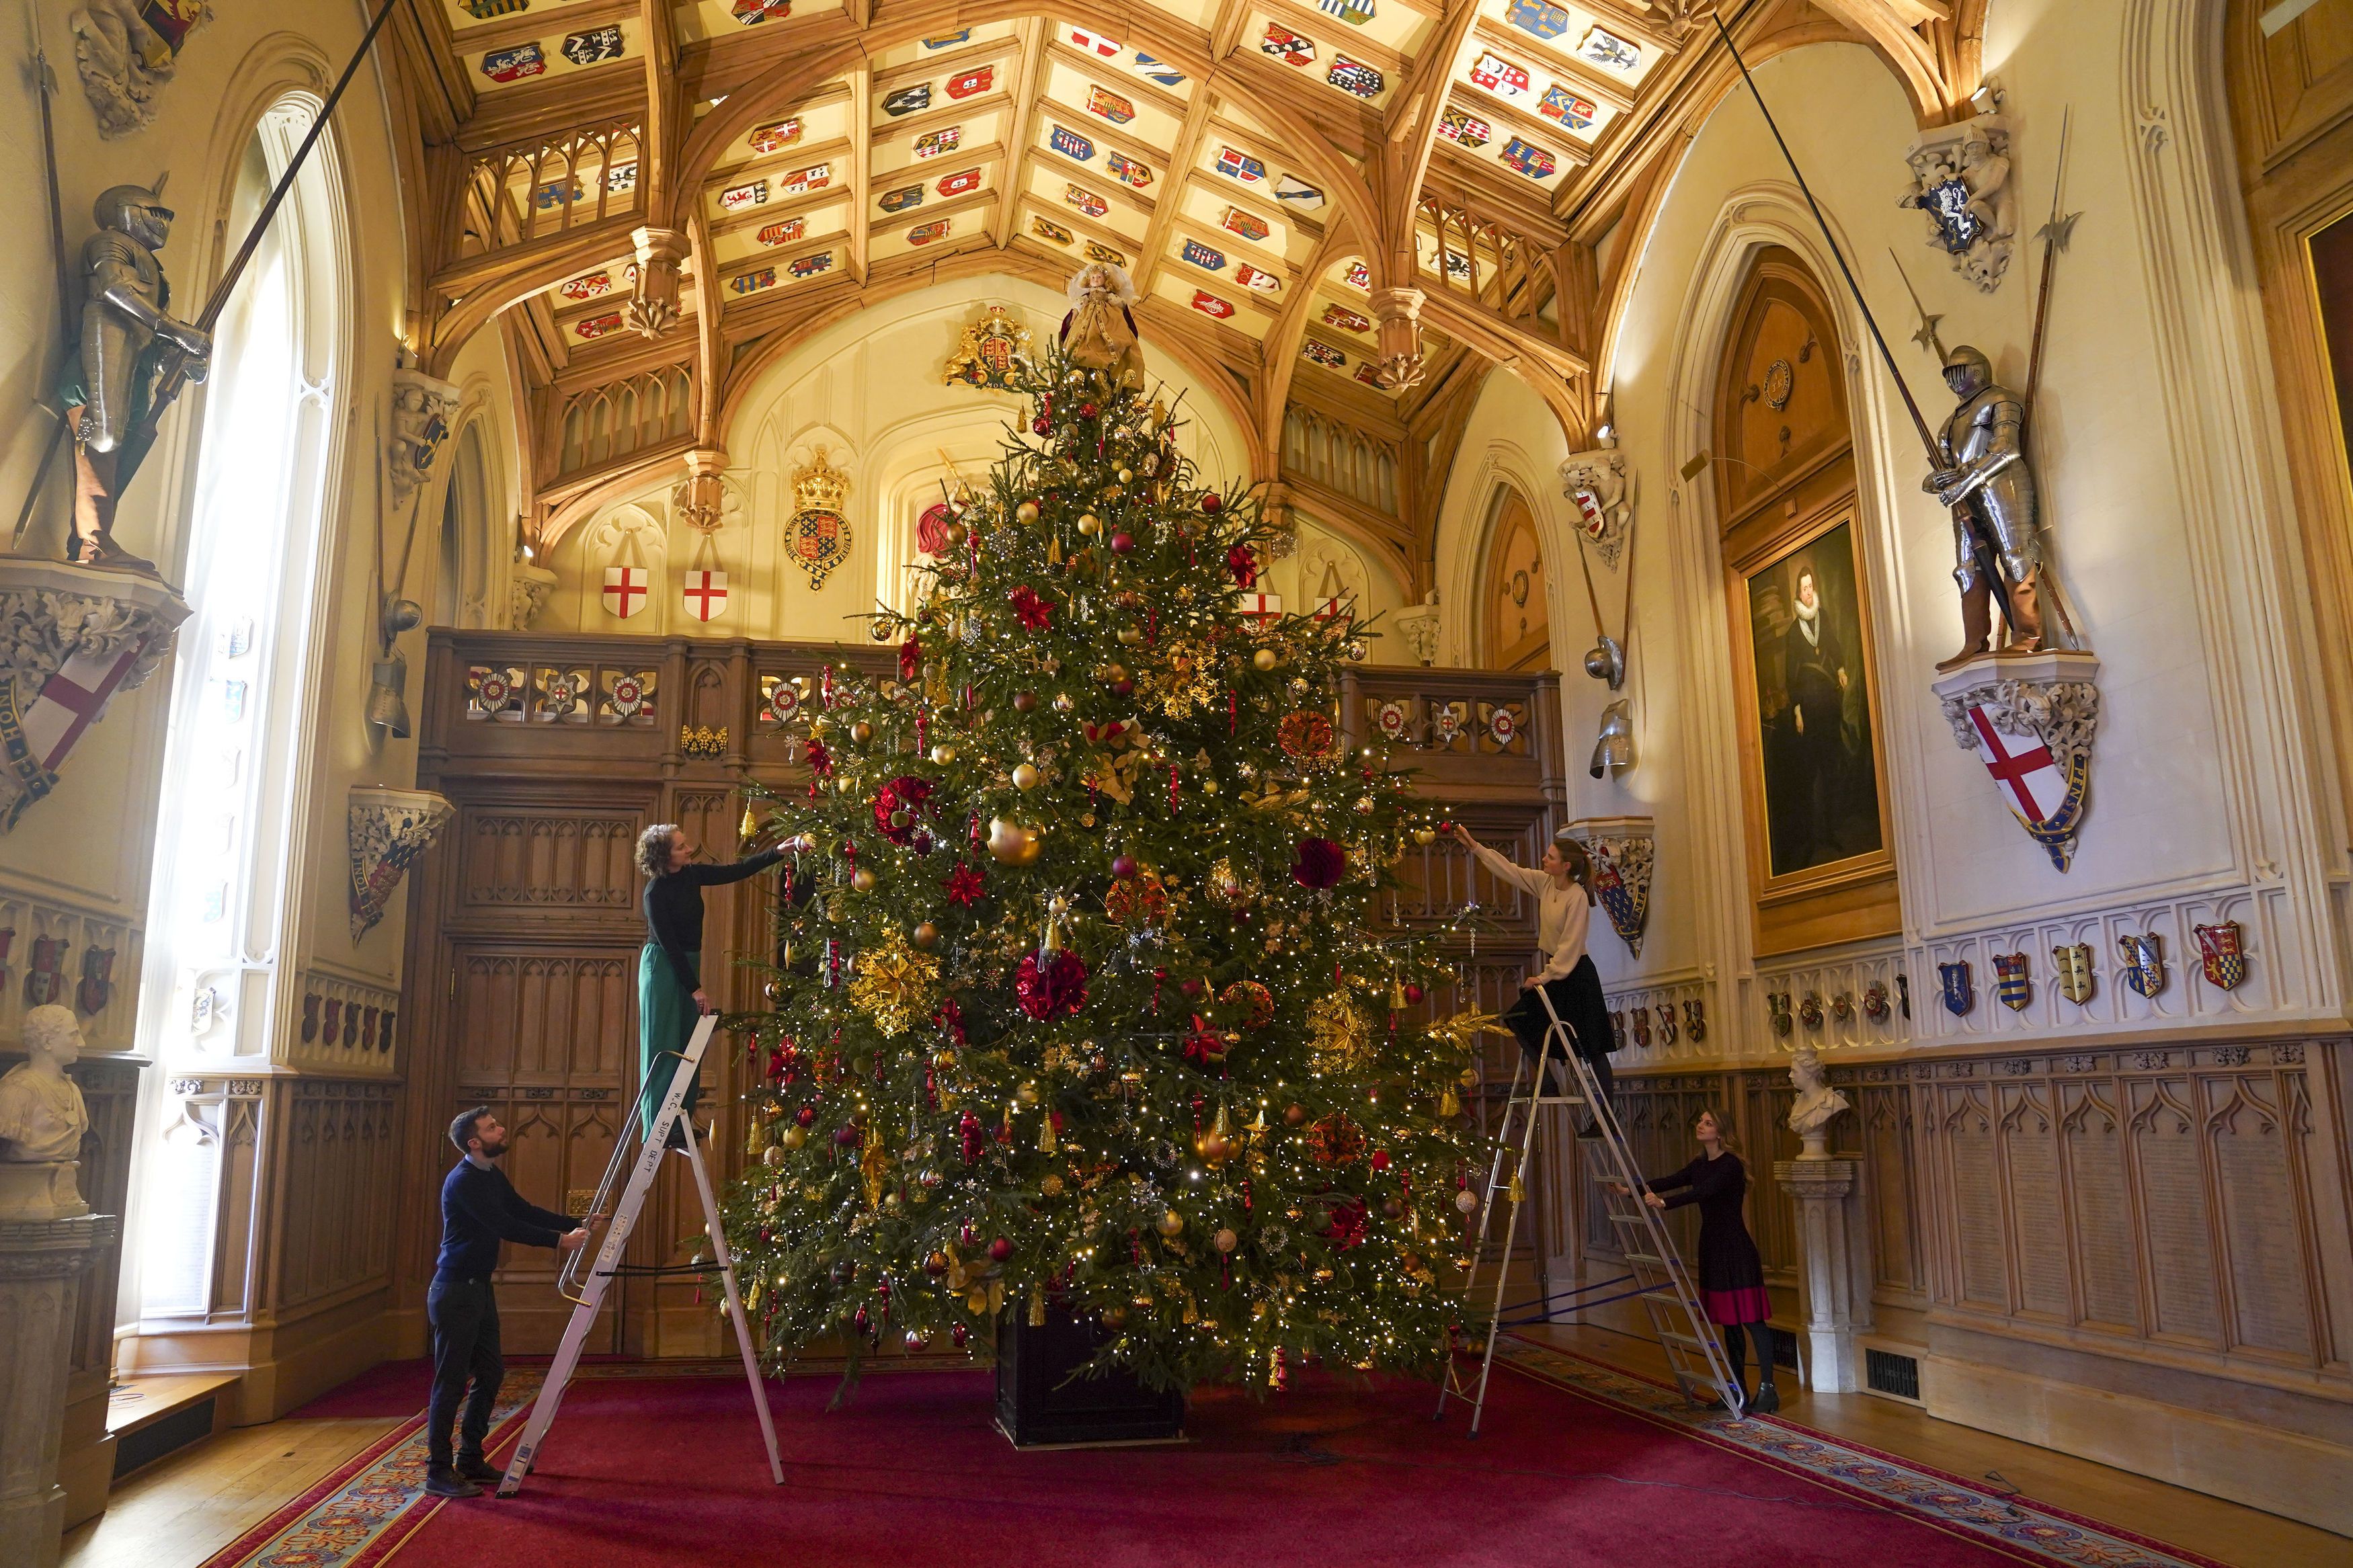 ウィンザー城のクリスマスツリー」2021年のデコレーションと歴史を振り返る